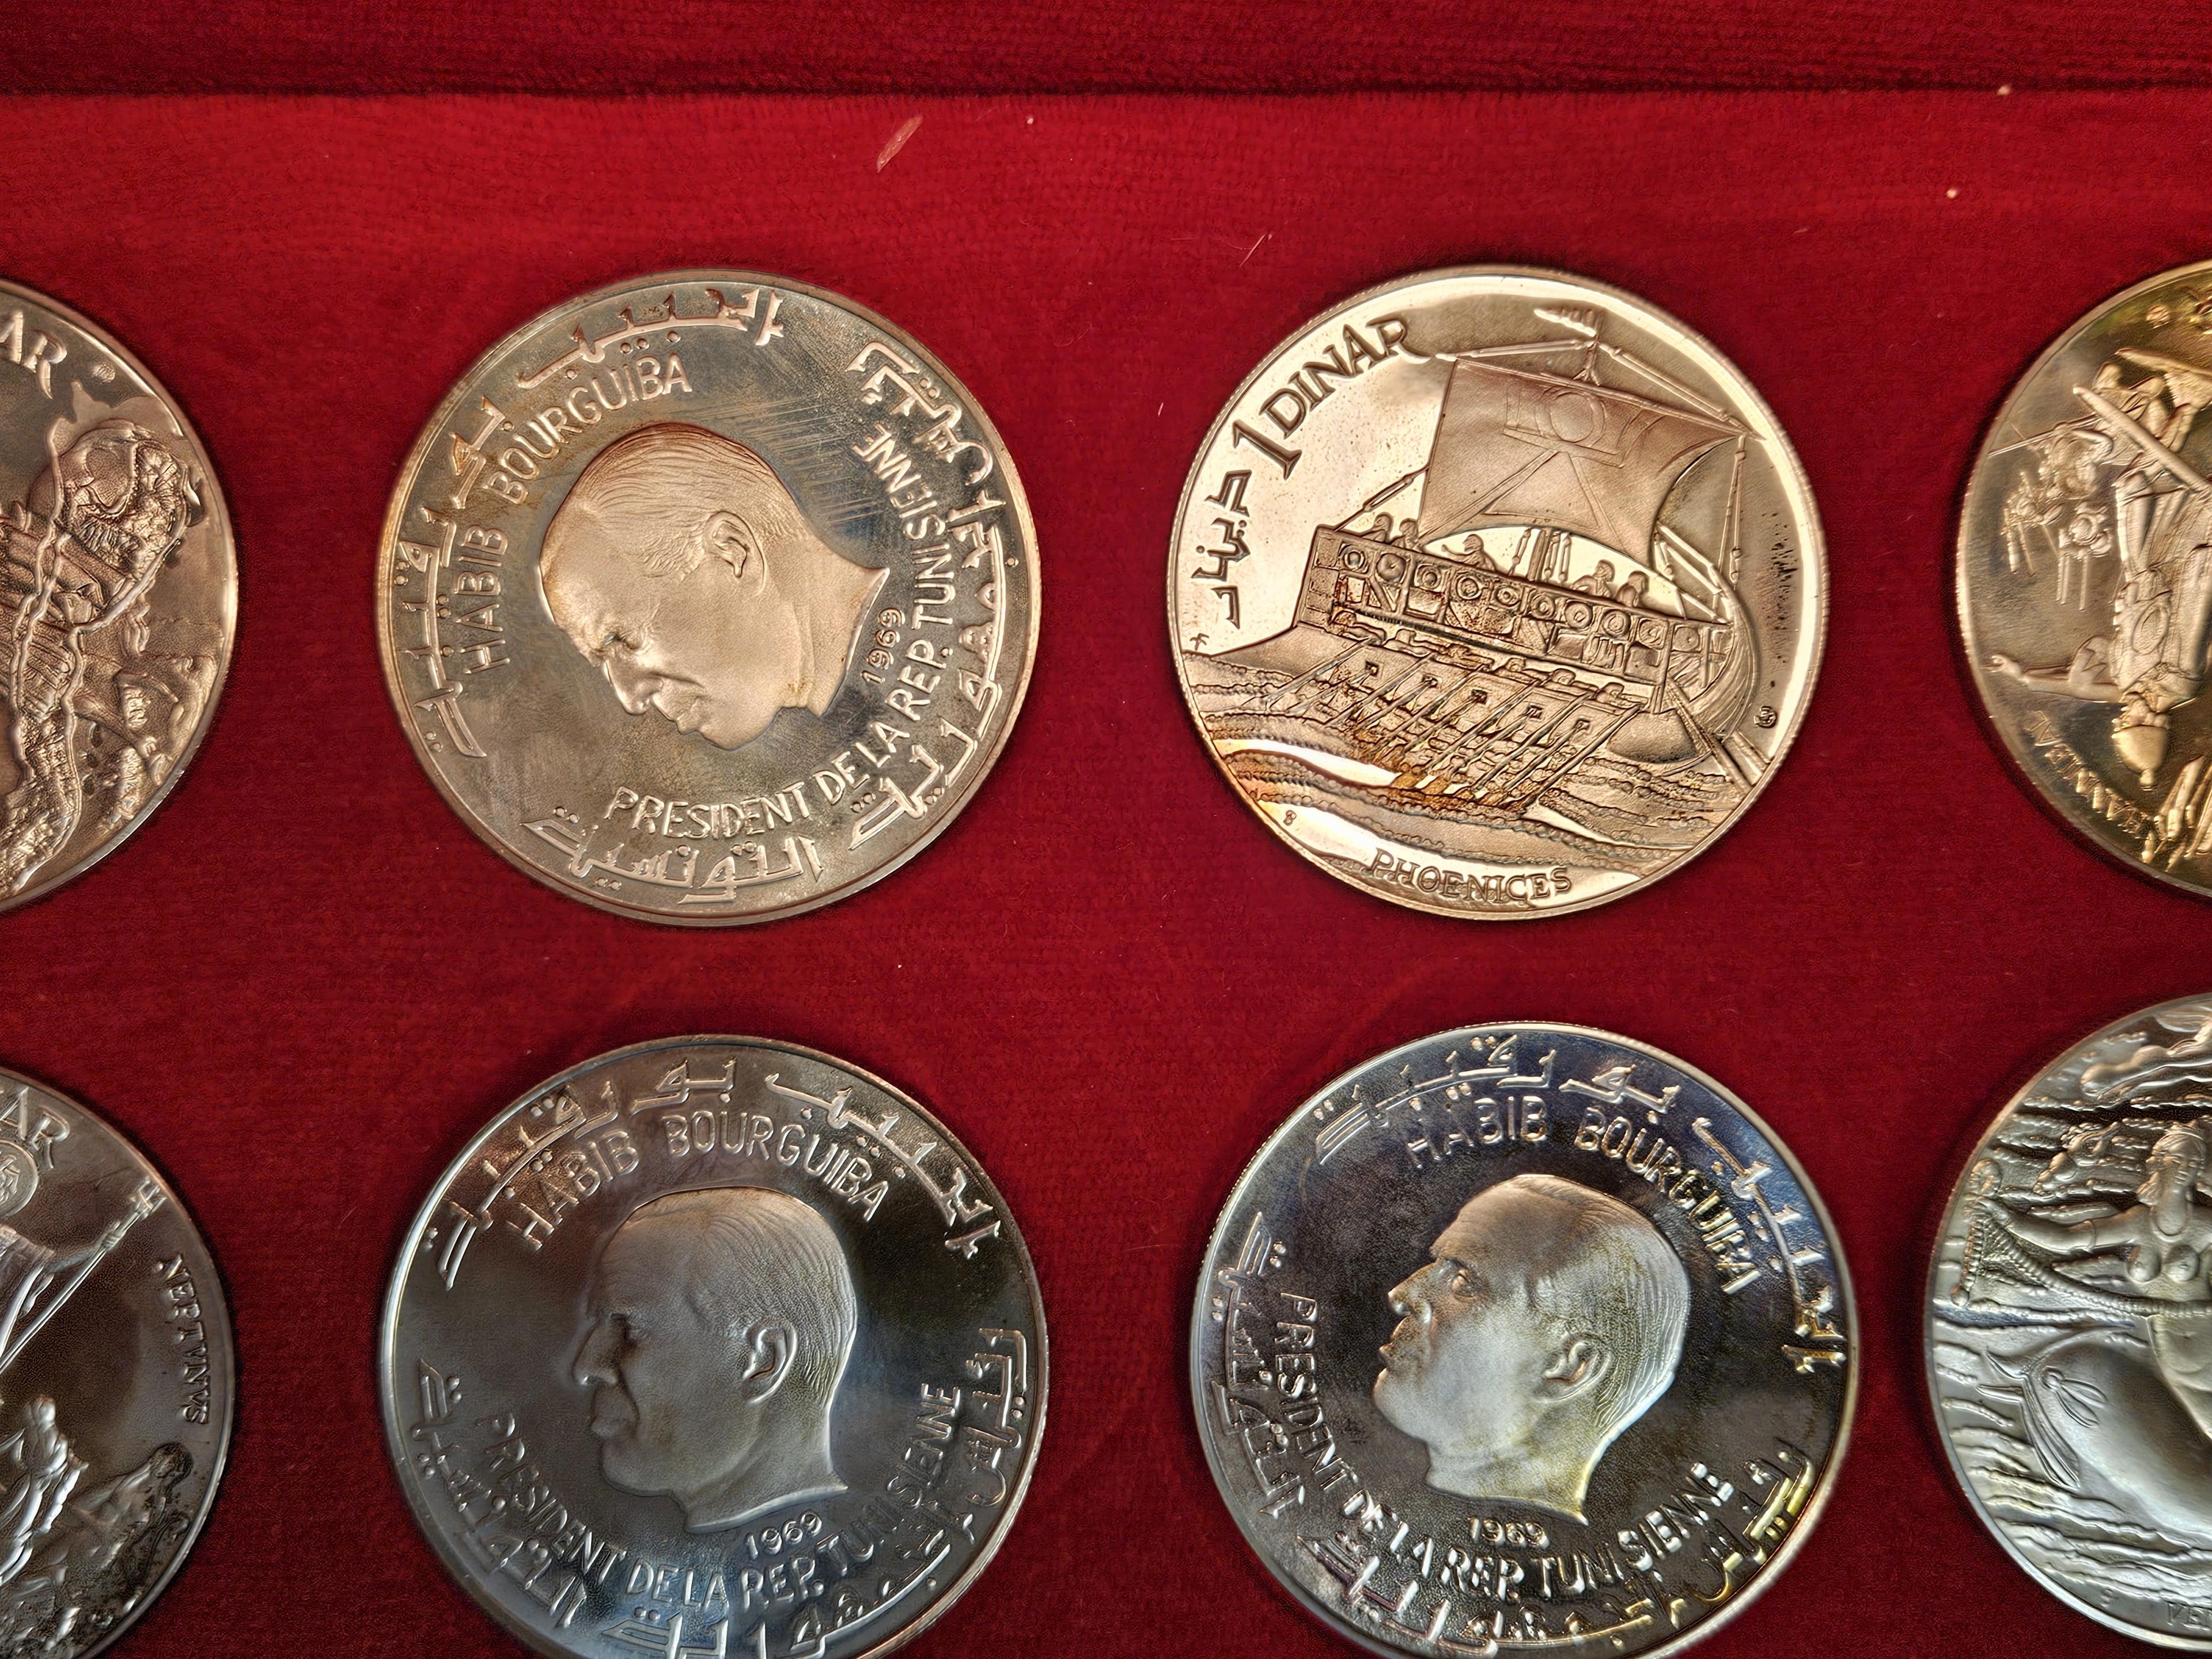 SCARCE! 1969 FM-NI Republic of Tunisia 10 Coin Silver Proof Set